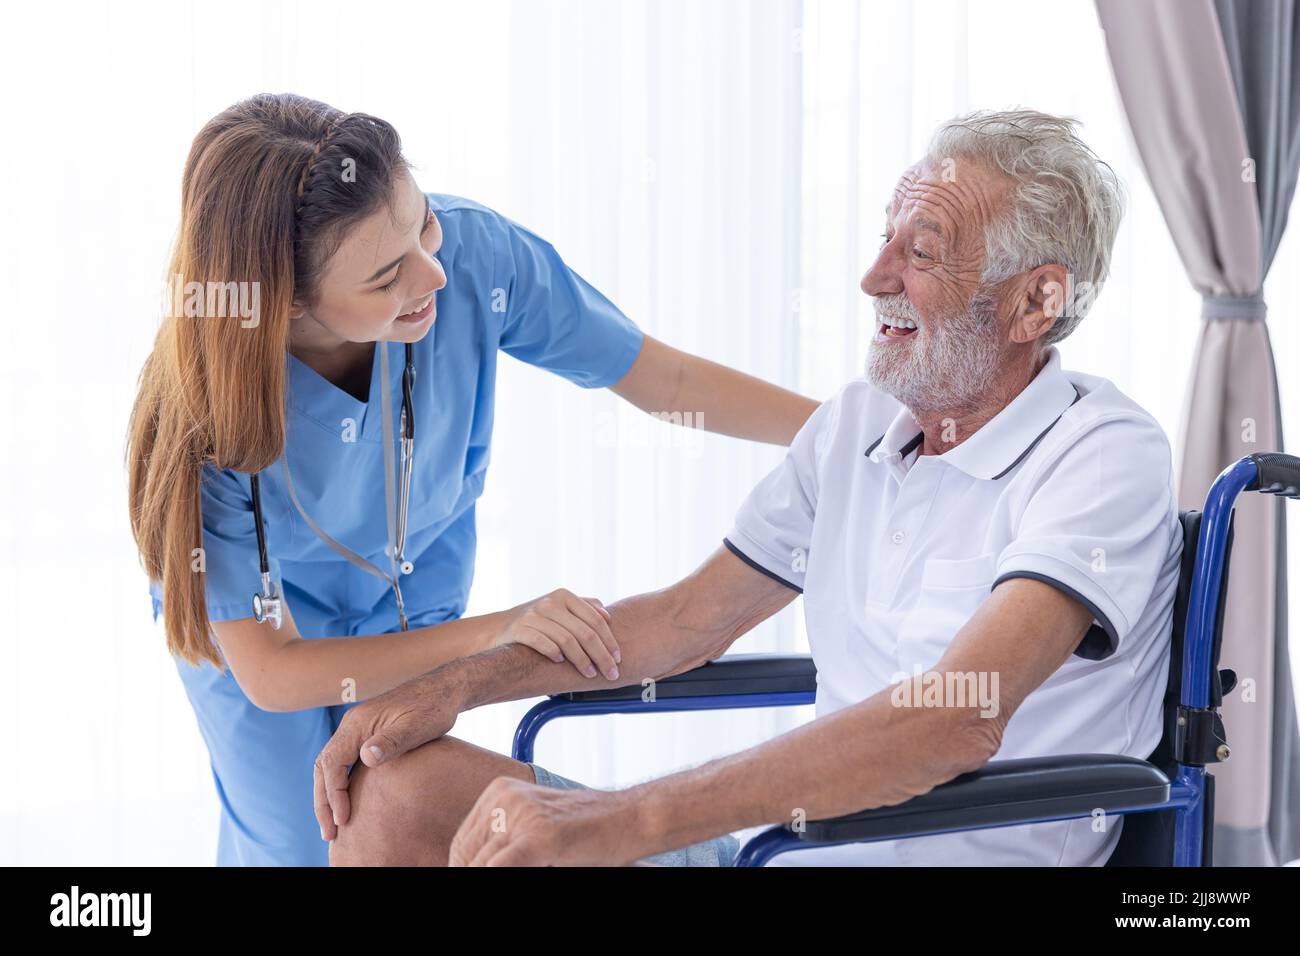 Infirmière personnel de l'équipe médicale Service de soutien au travail soins de santé personne âgée senior Homme sur roue Président en soins à domicile. Banque D'Images